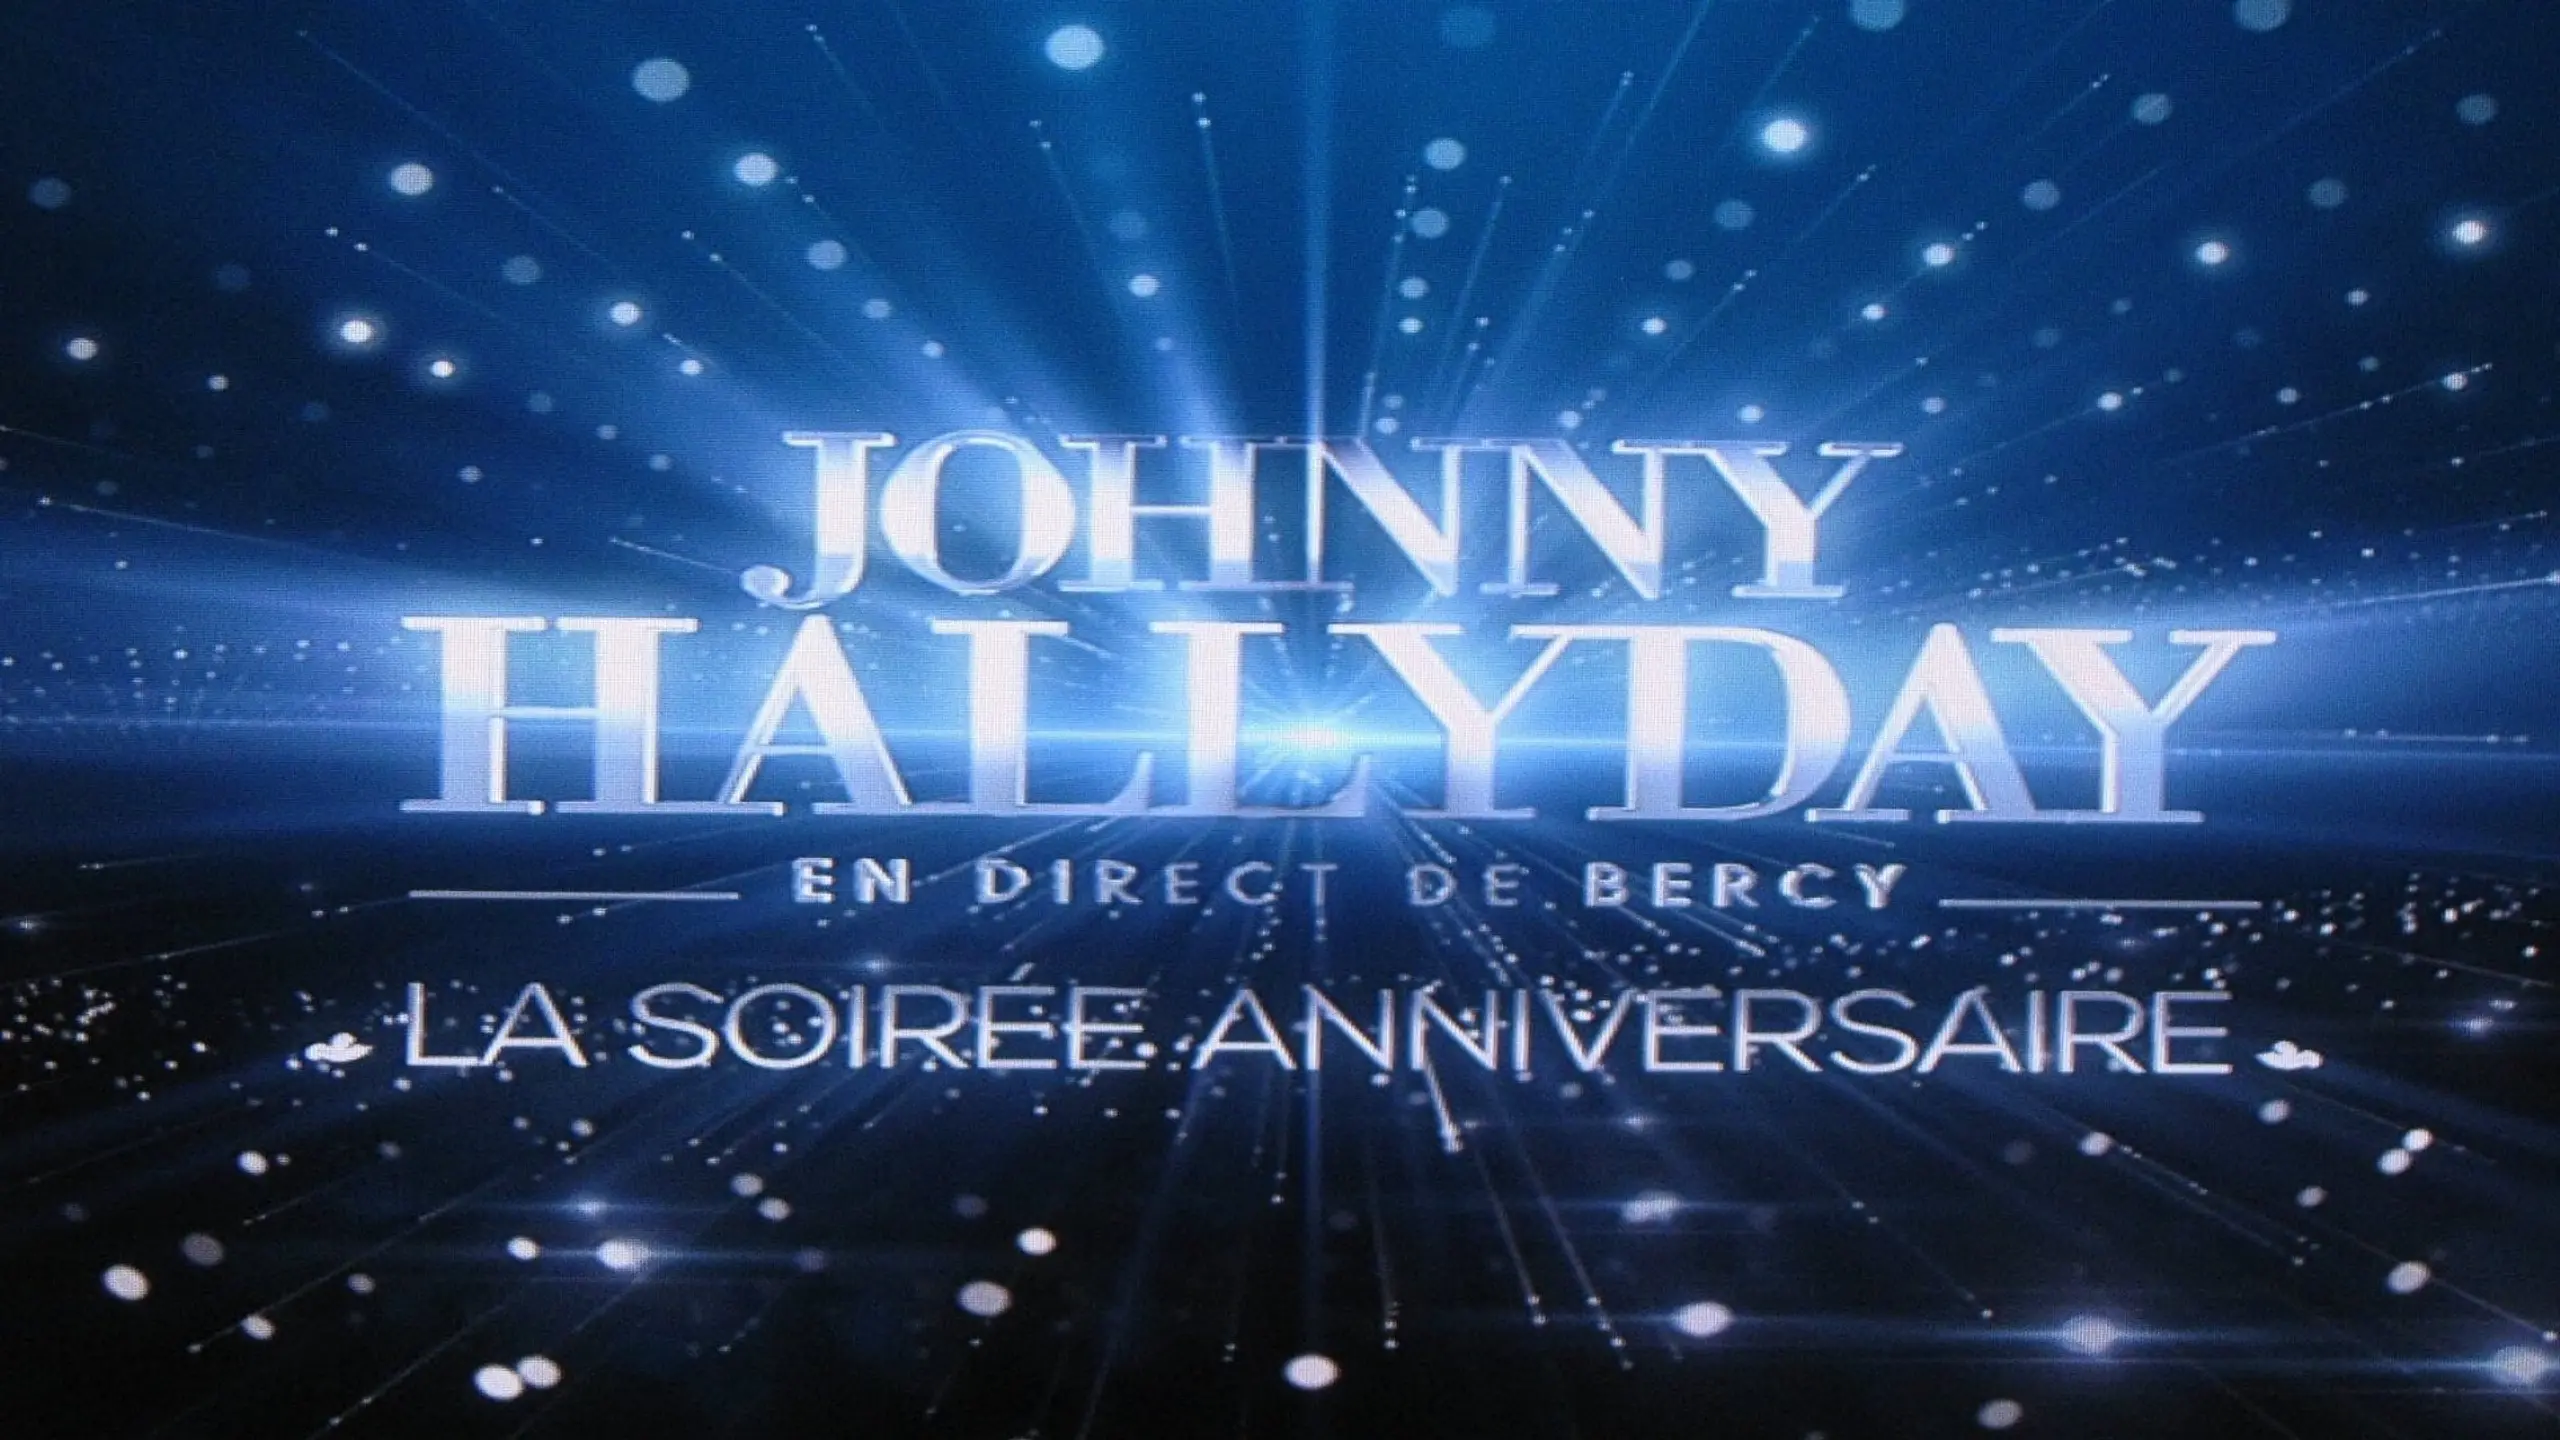 Johnny Hallyday en direct de Bercy, La Soirée Anniversaire